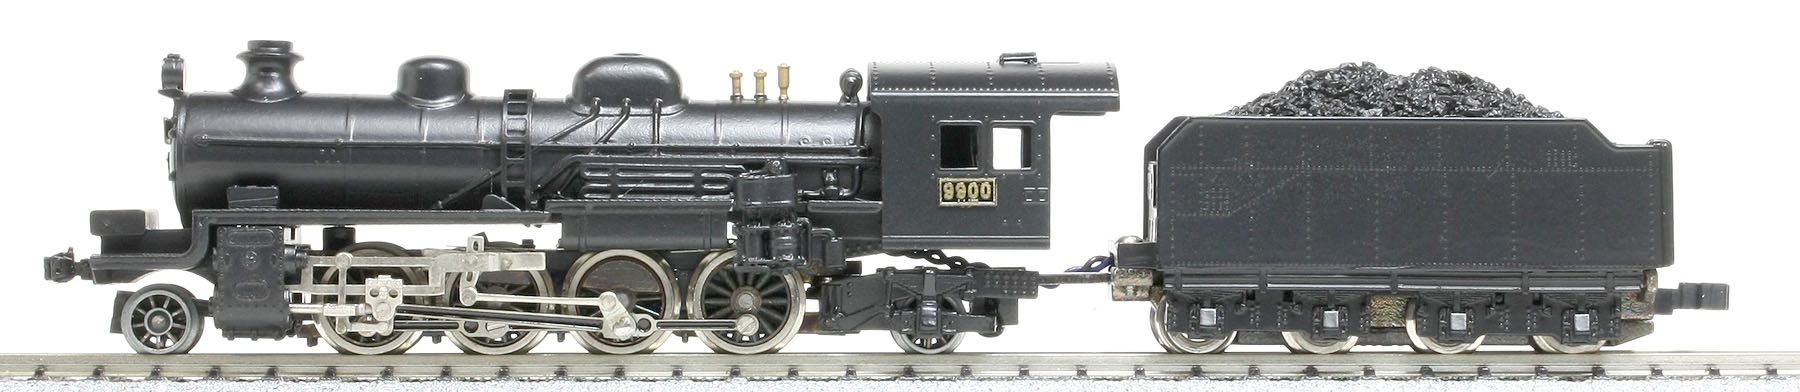 【希少】中村精密 国鉄 D50 蒸気機関車 鉄道模型